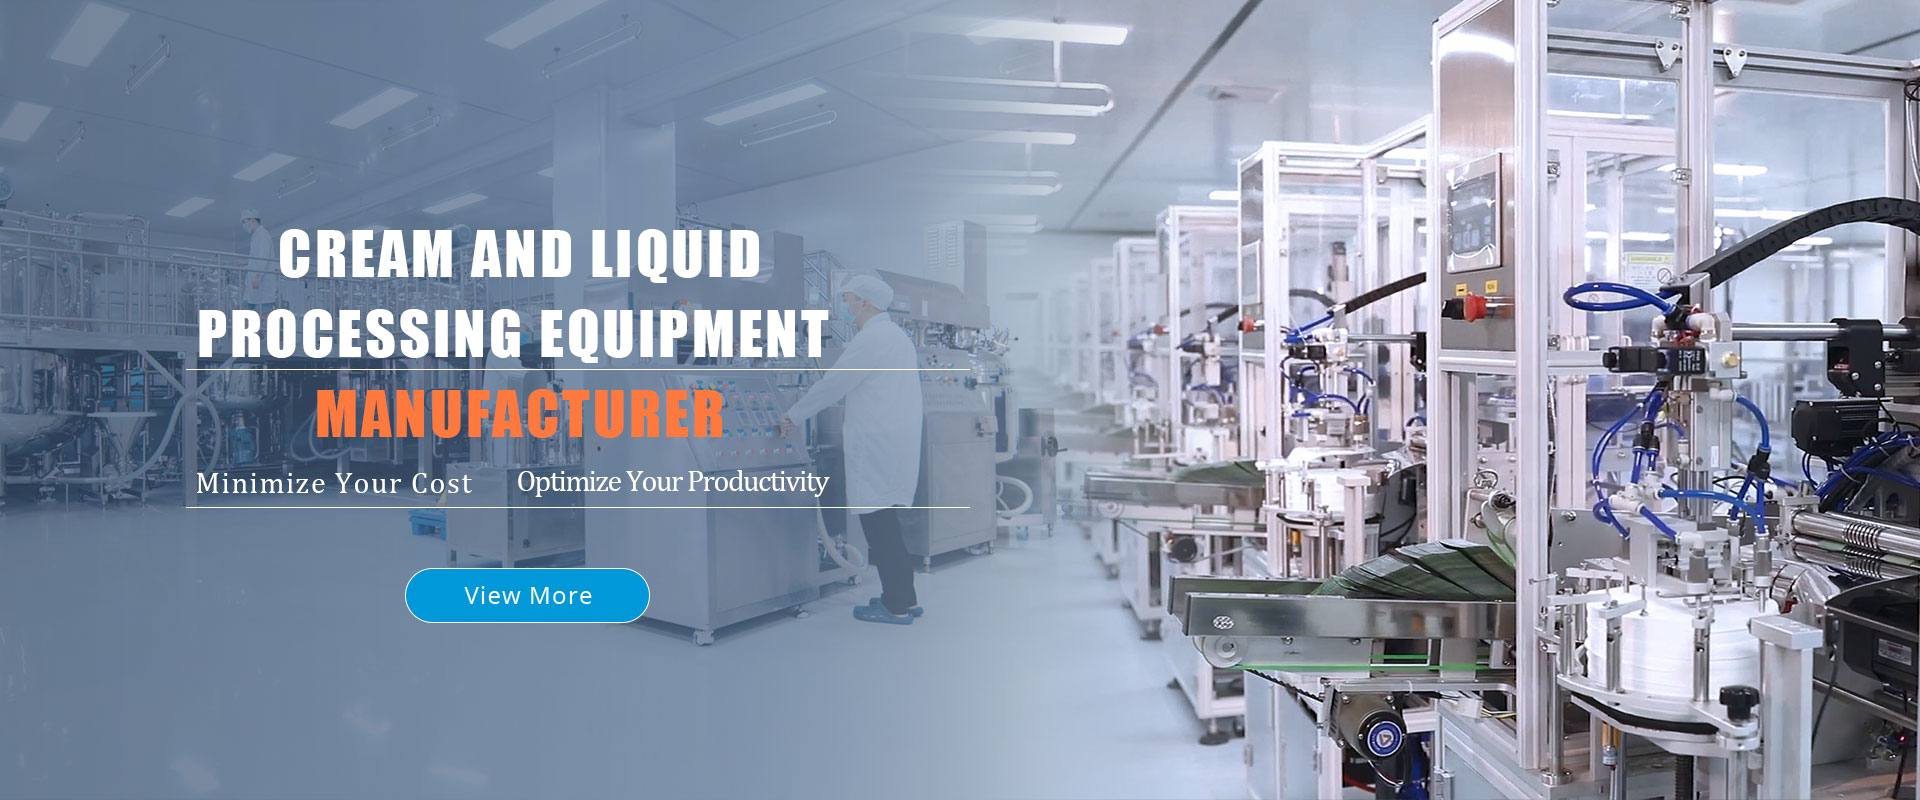 cream-and-liquid-processing-equipment-manufacturer